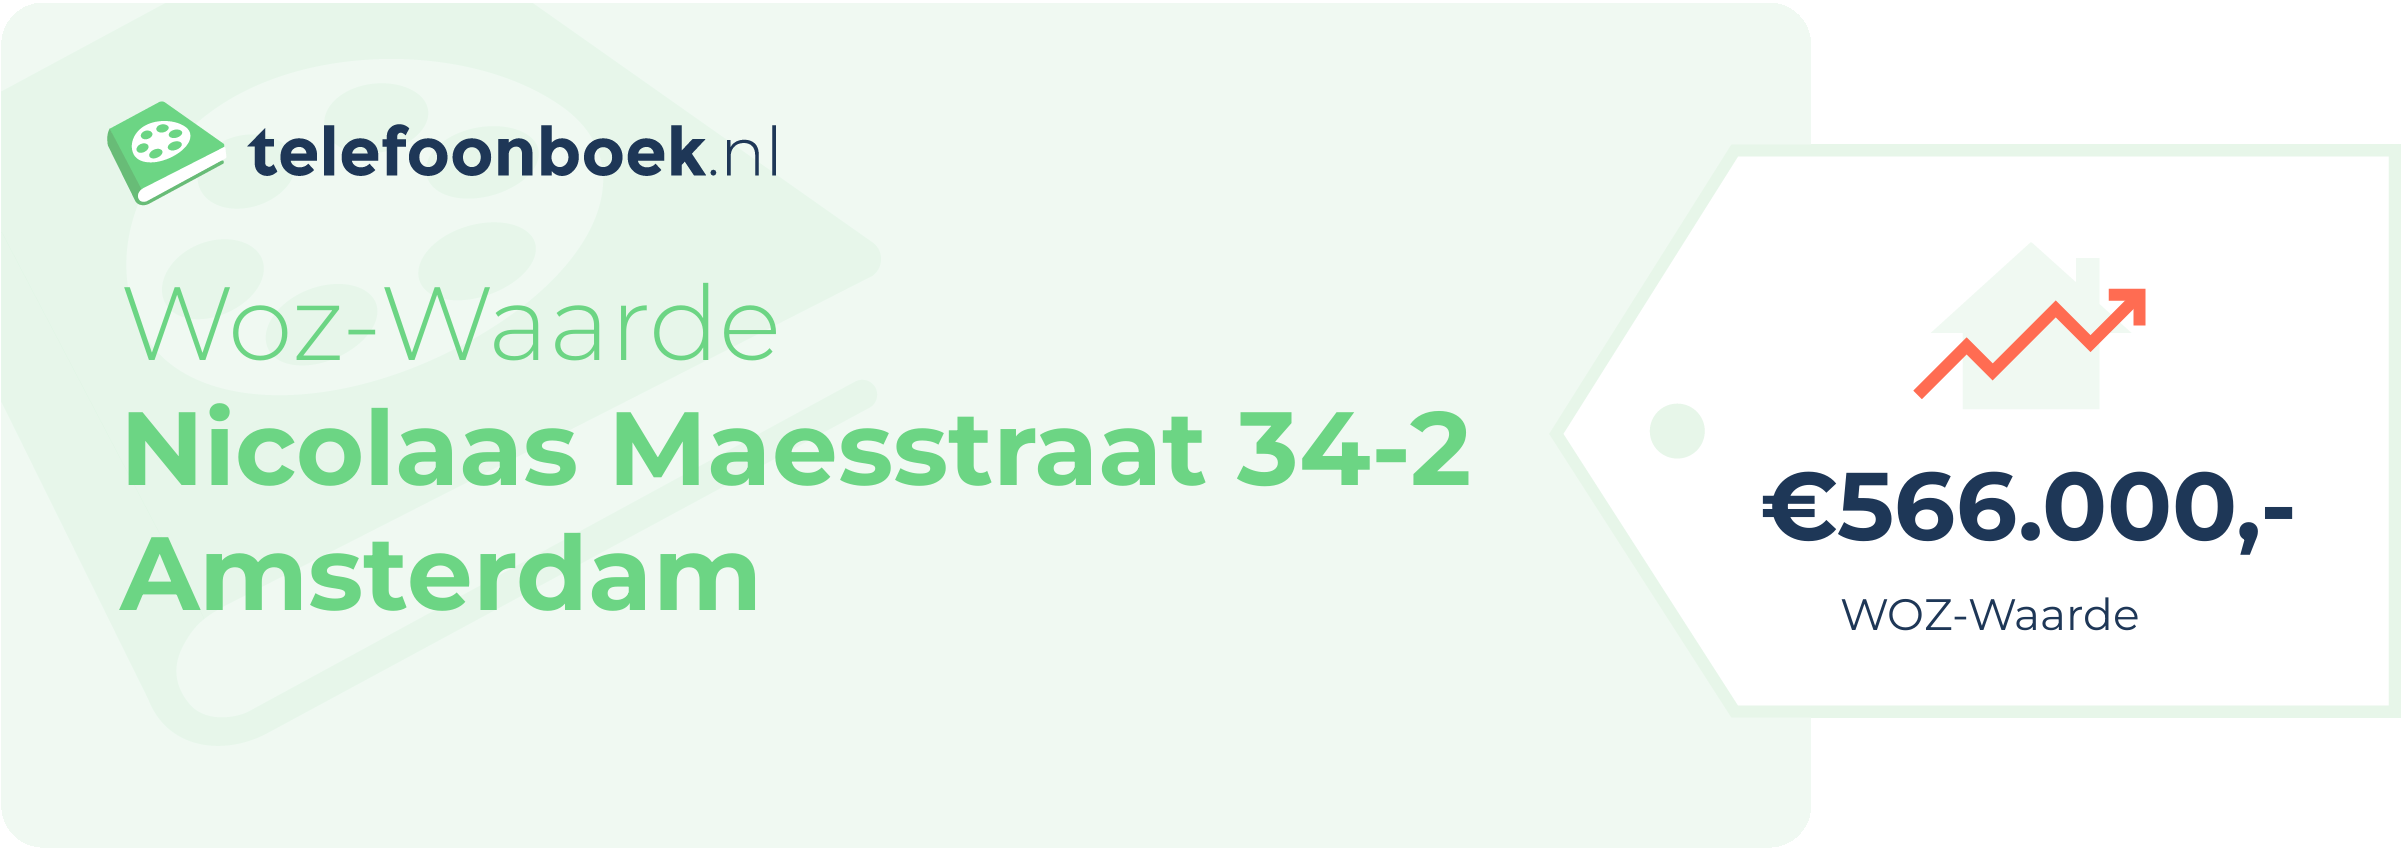 WOZ-waarde Nicolaas Maesstraat 34-2 Amsterdam